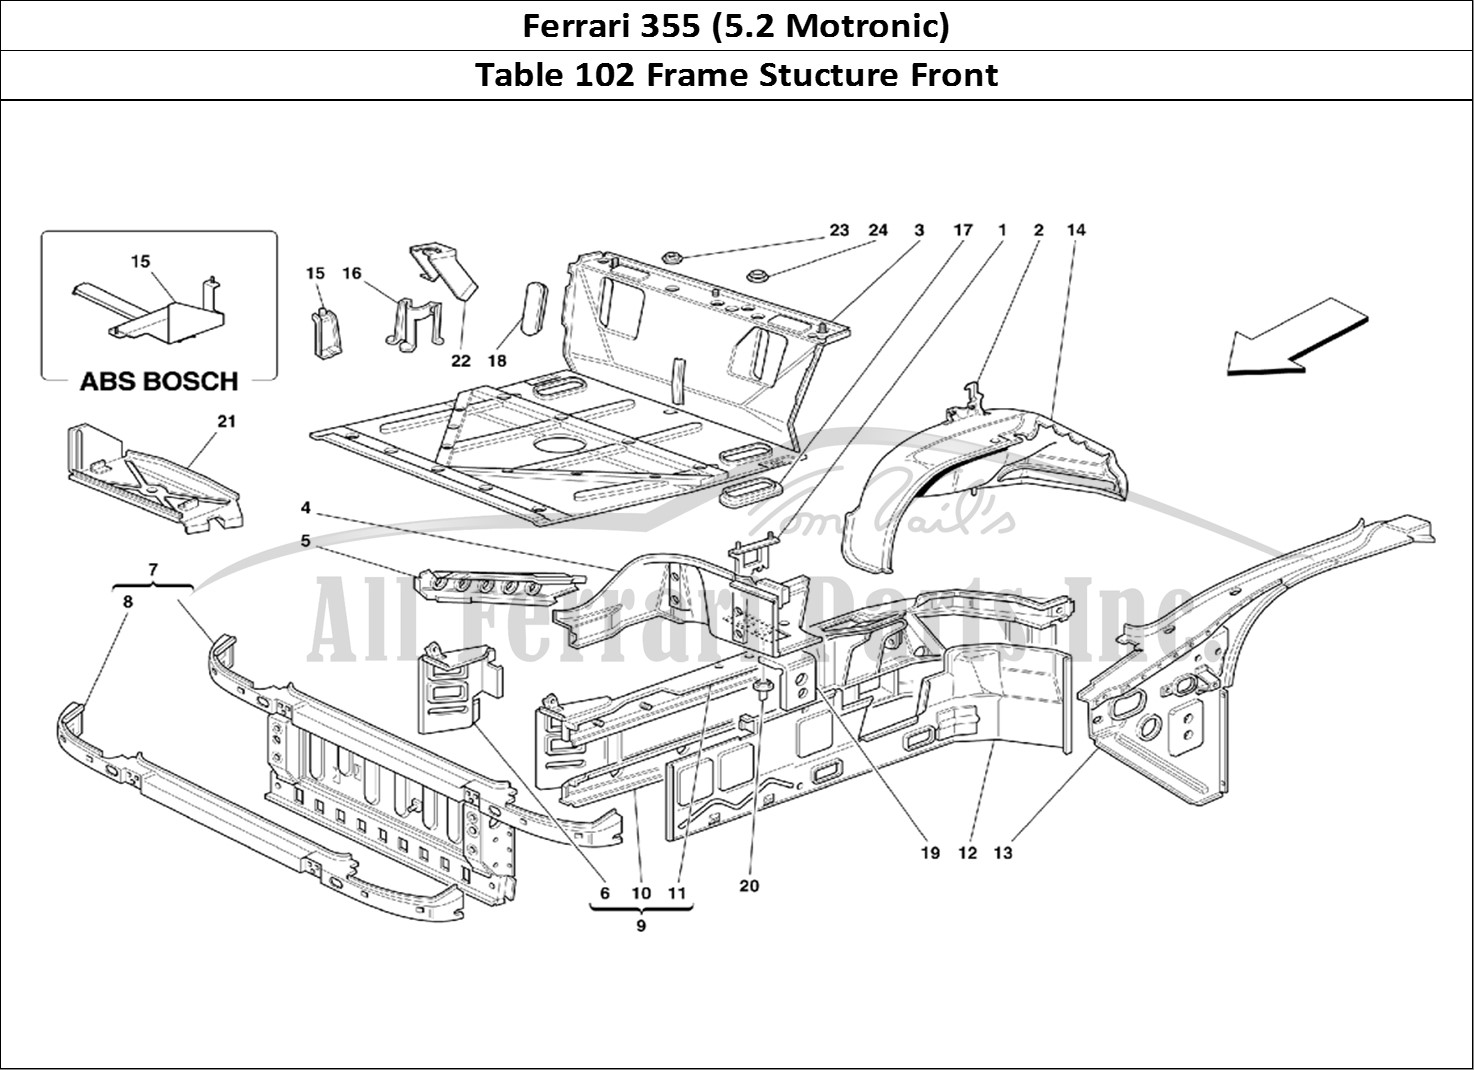 Ferrari Parts Ferrari 355 (5.2 Motronic) Page 102 Front Part Structures